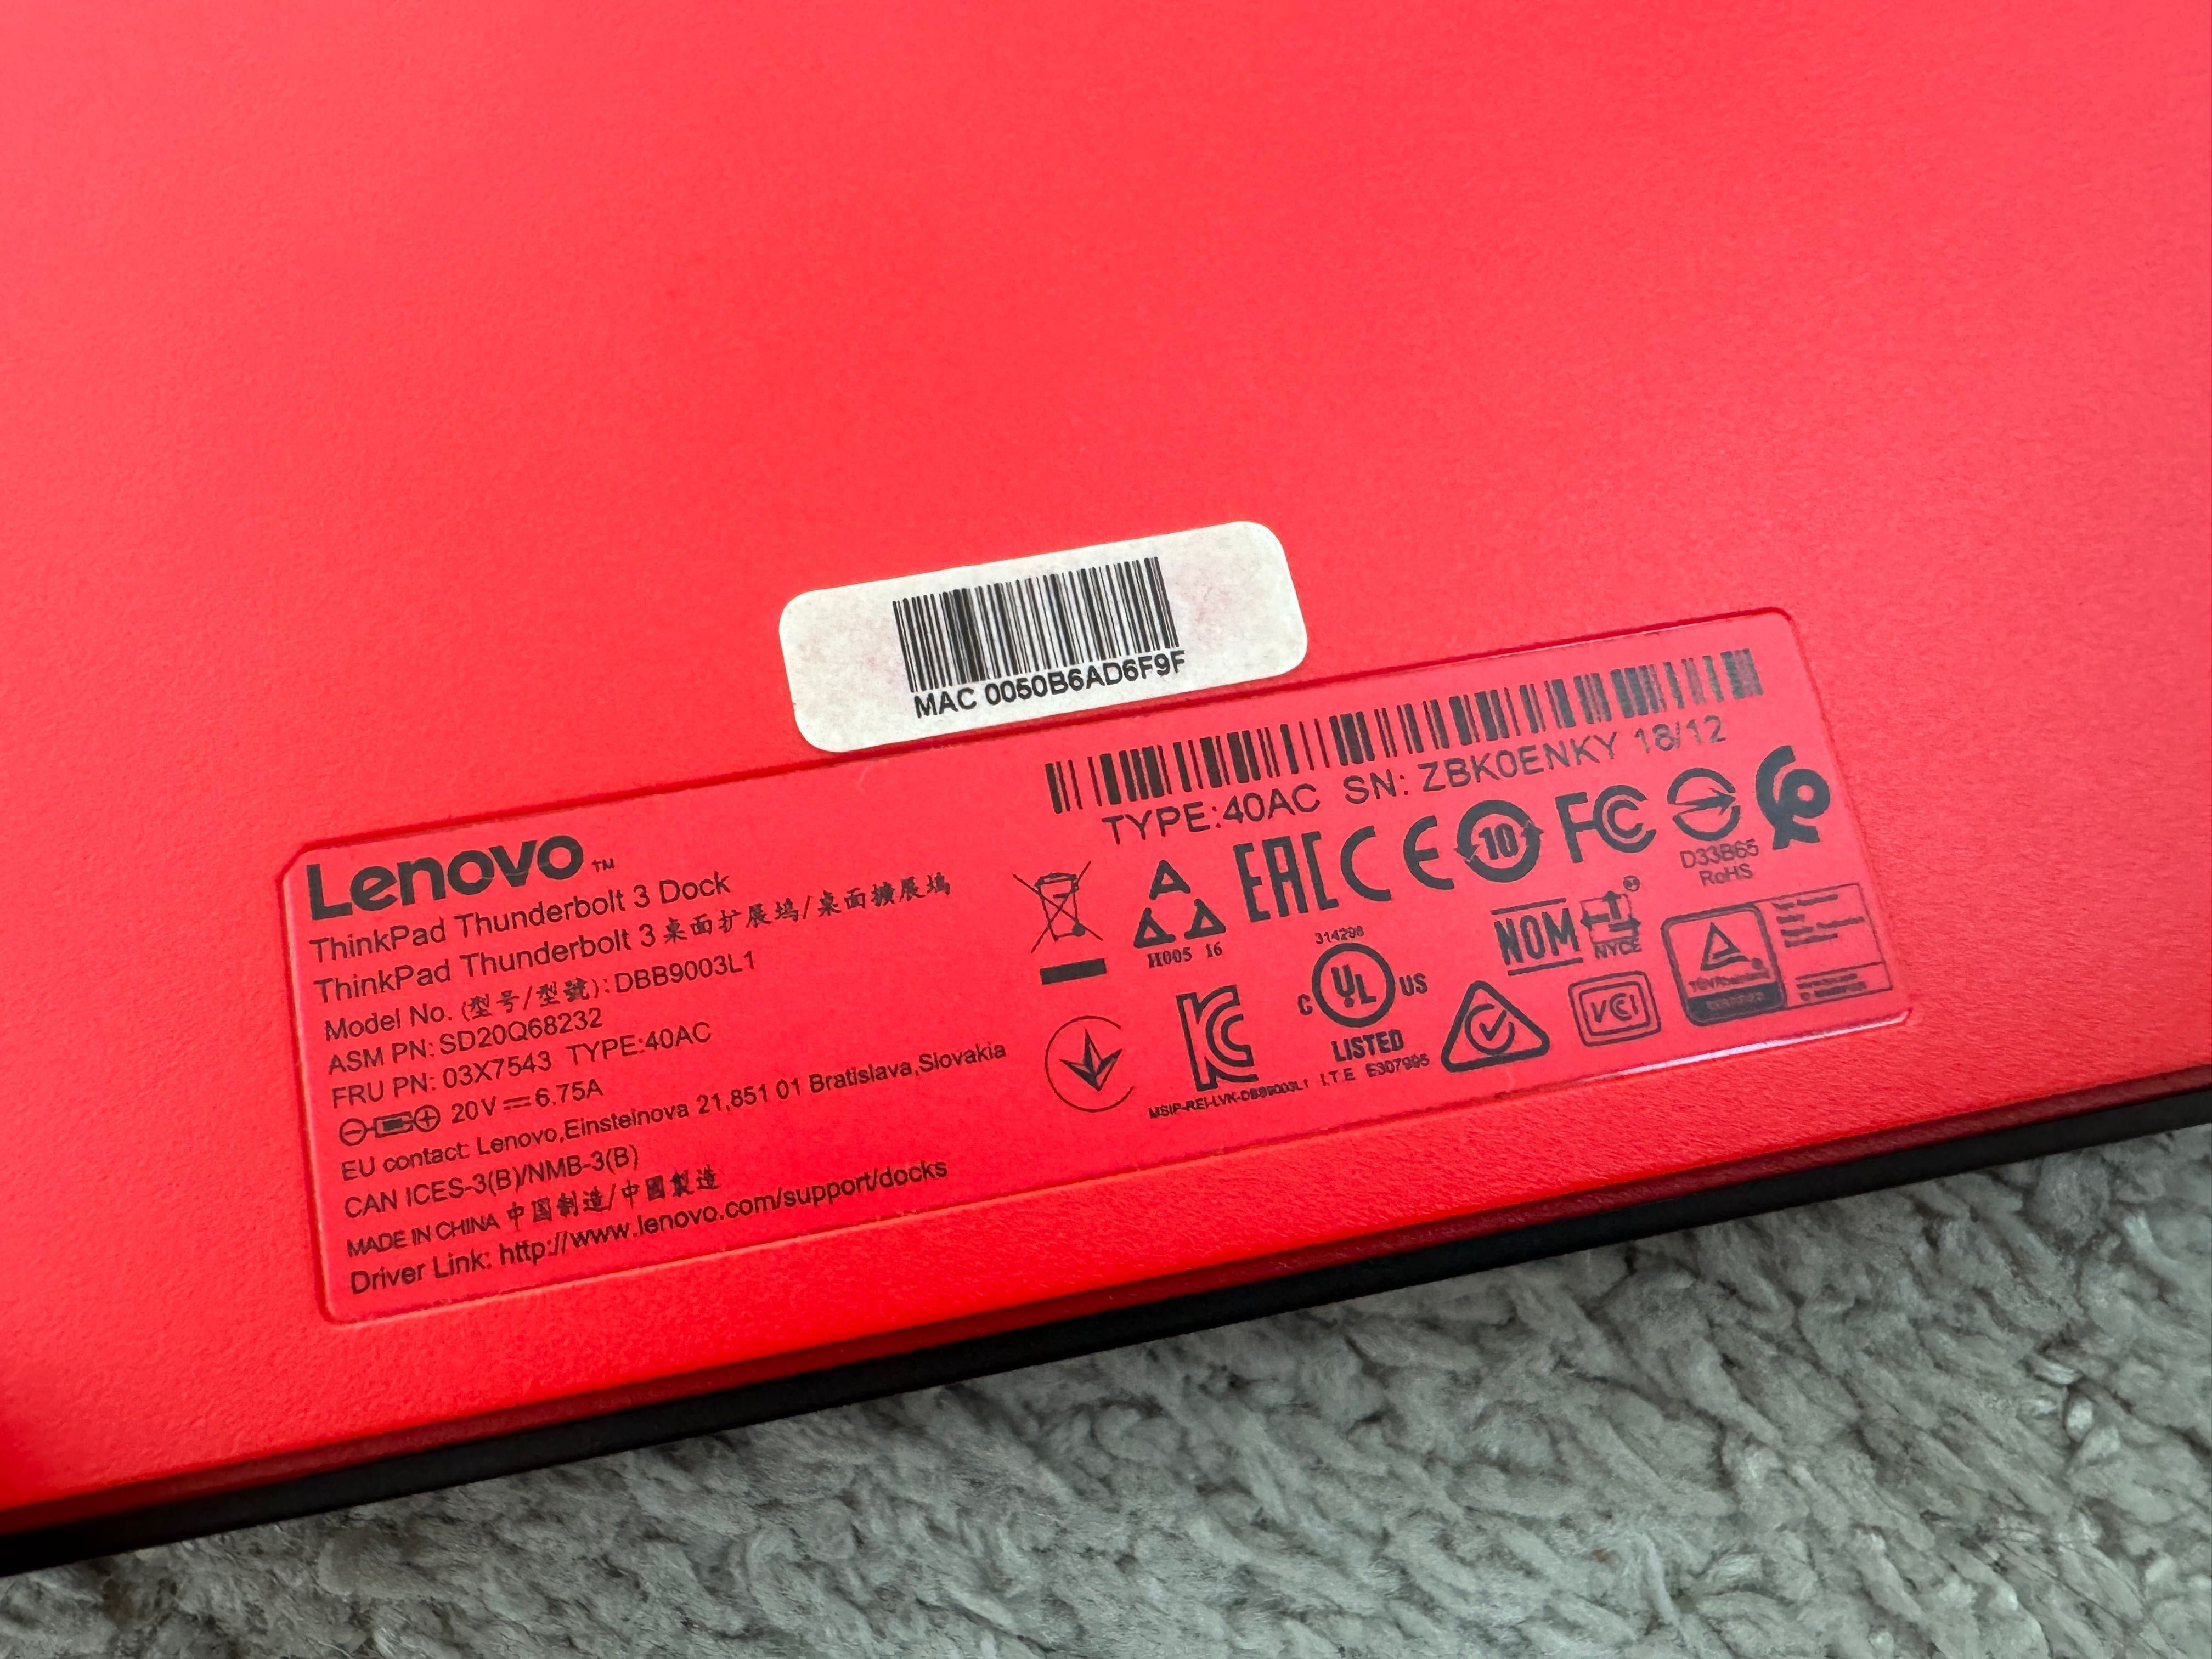 Lenovo ThinkPad Thunderbolt 3 Dock 40AC, ca nou